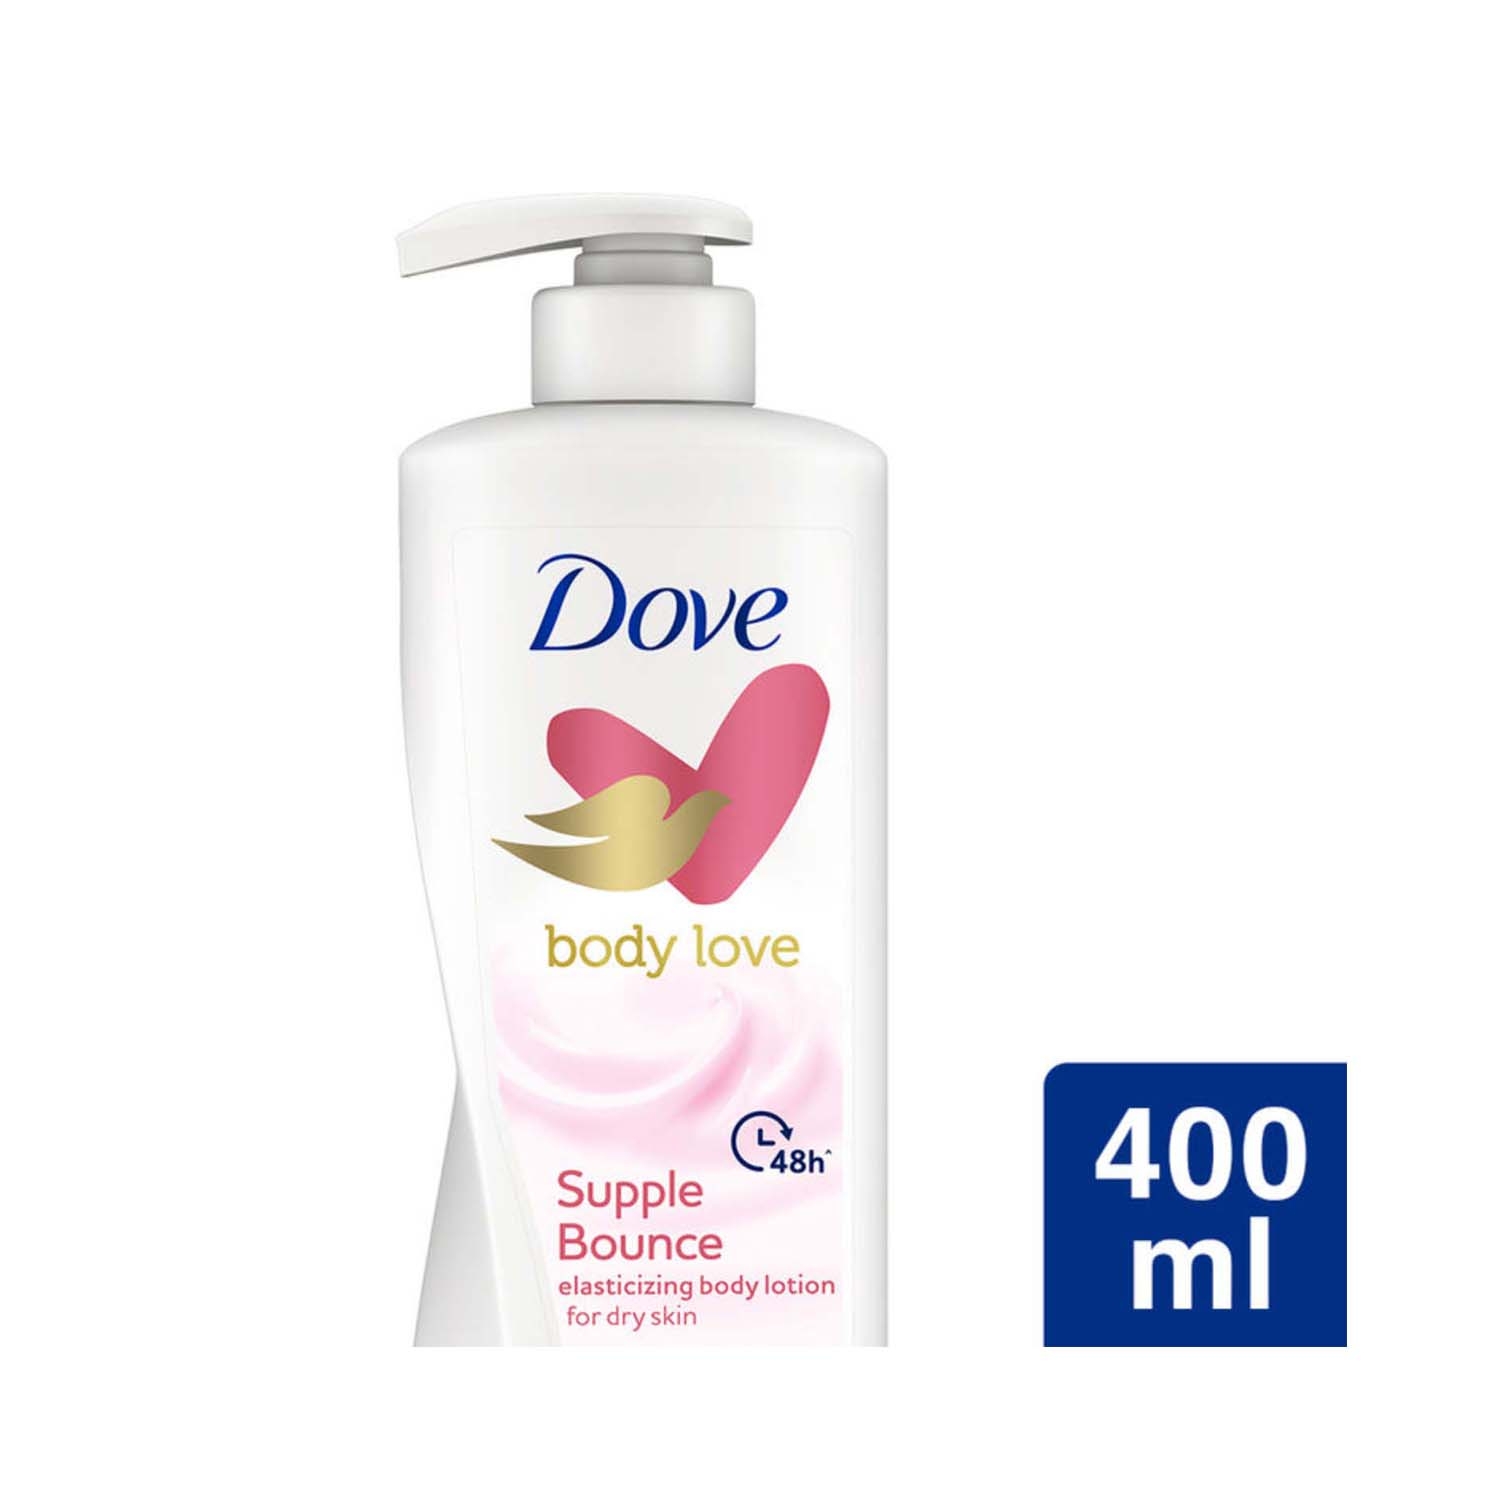 Dove | Dove Body Love Supple Bounce Body Lotion (400ml)